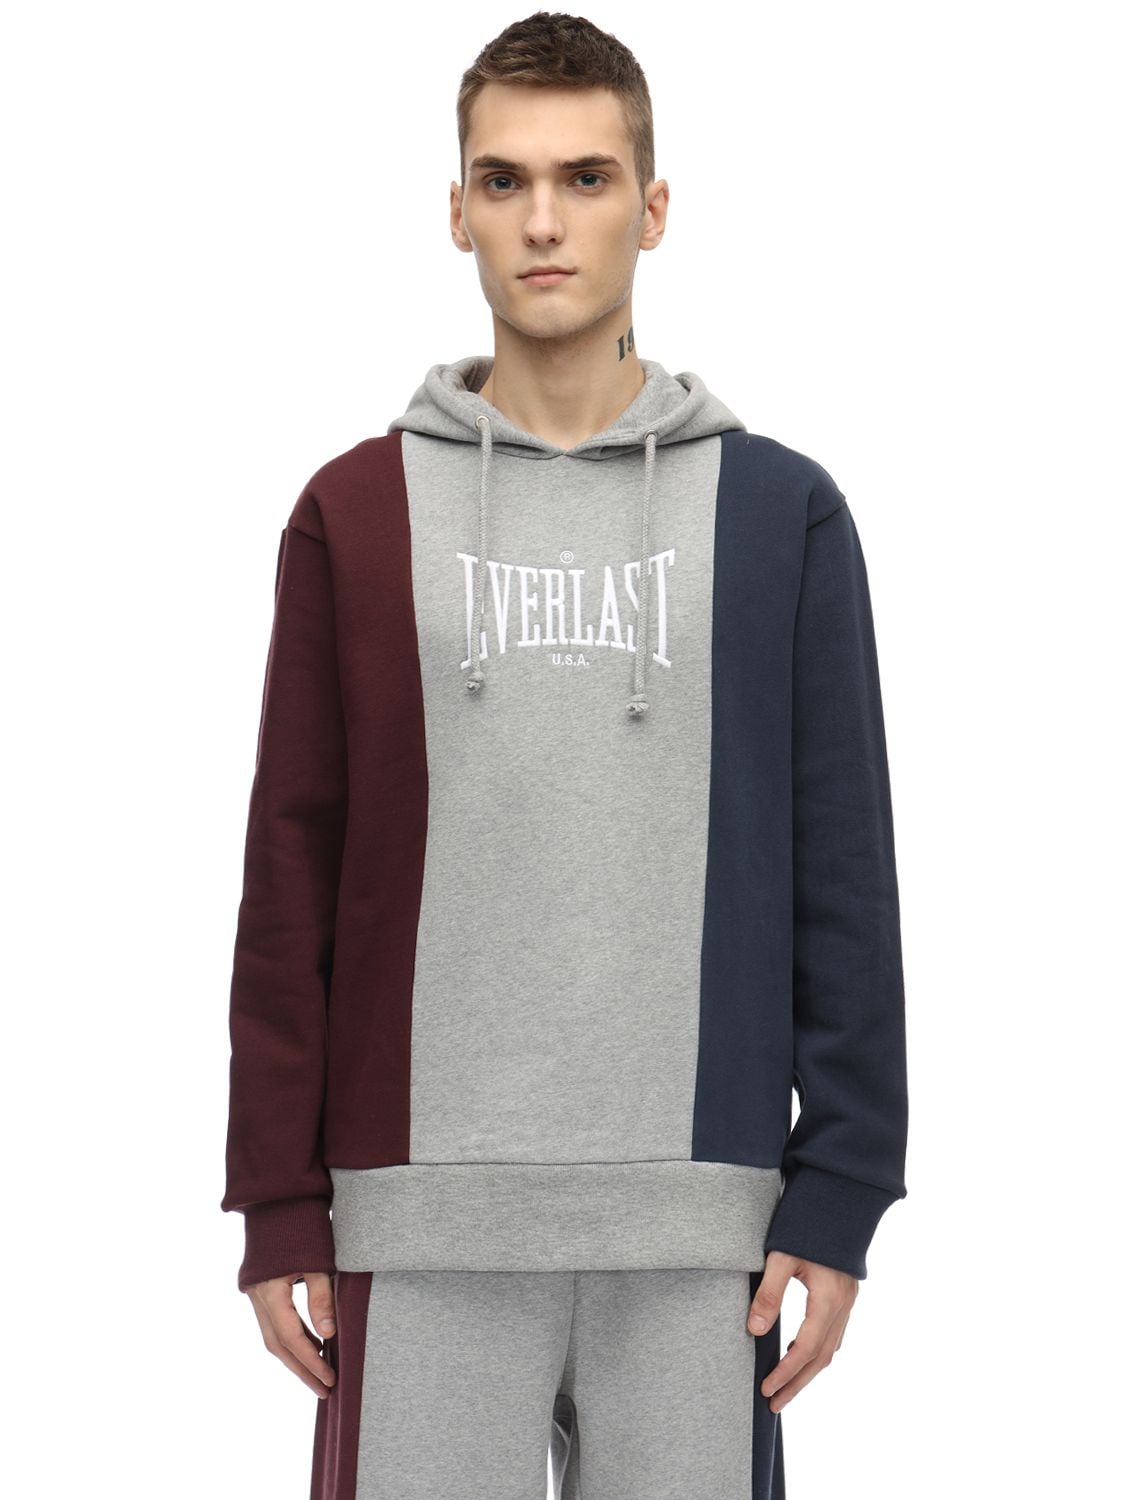 Everlast T.e.n. Cotton Blend Sweatshirt Hoodie In Grey